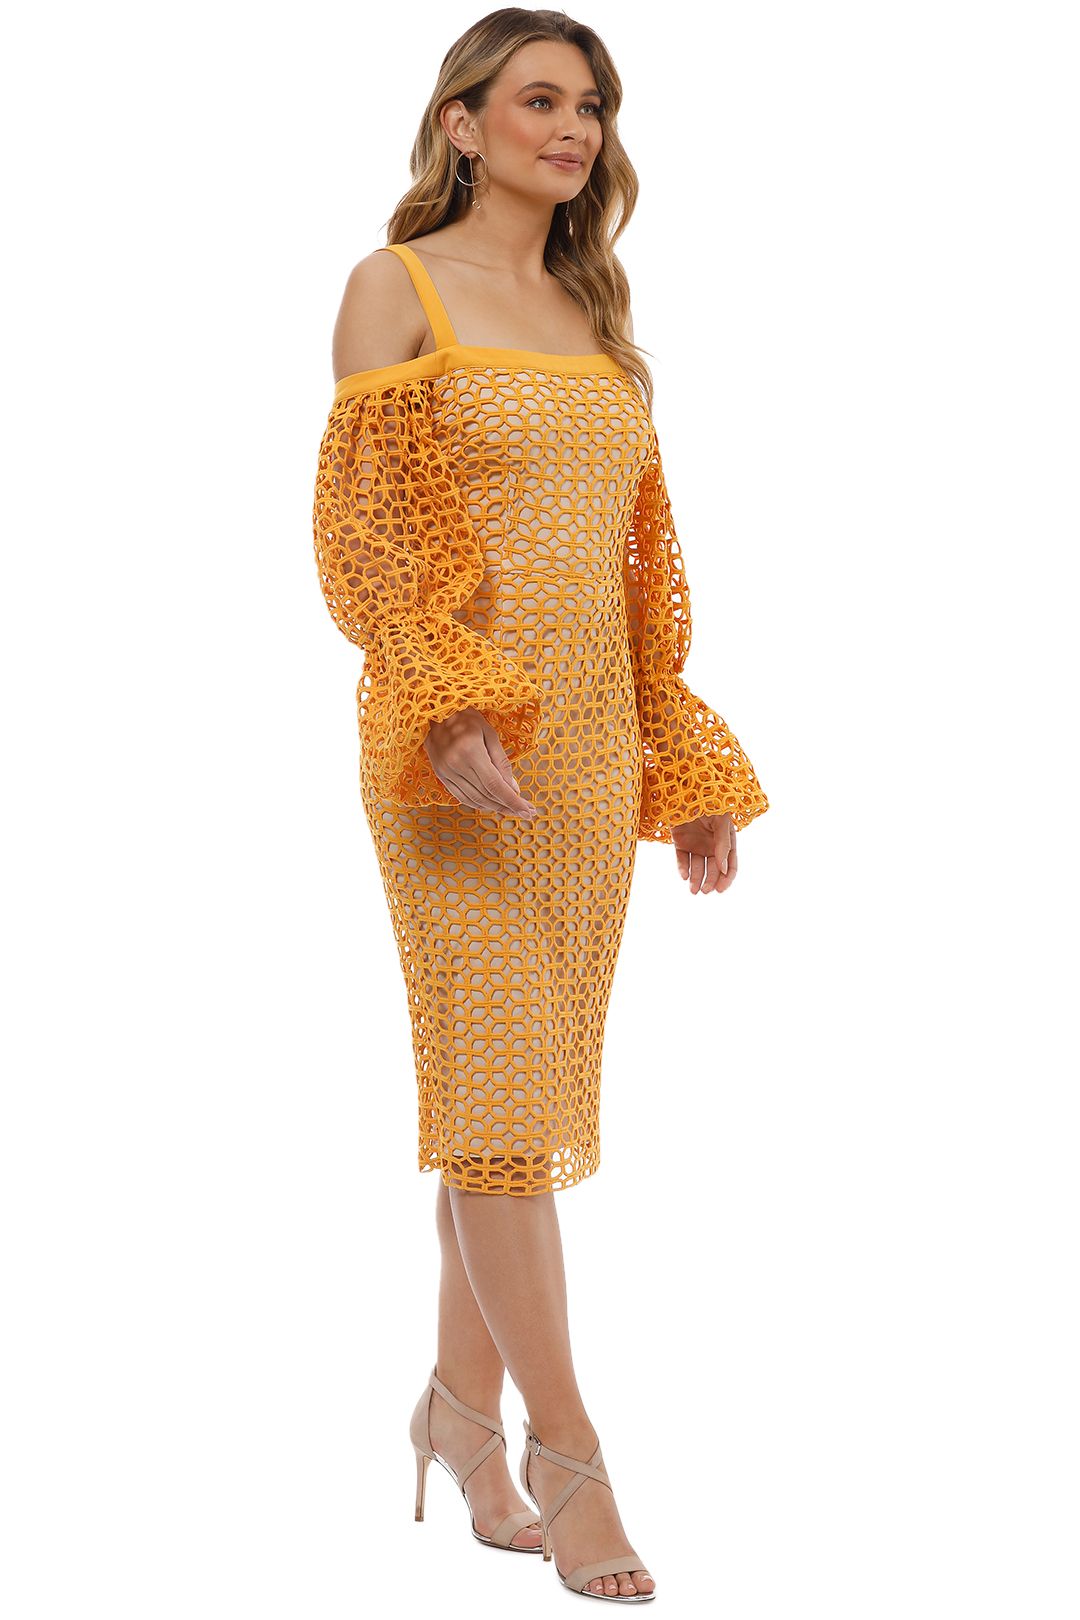 Cooper St - Karlie Lace Bloom Dress - Marigold - Side